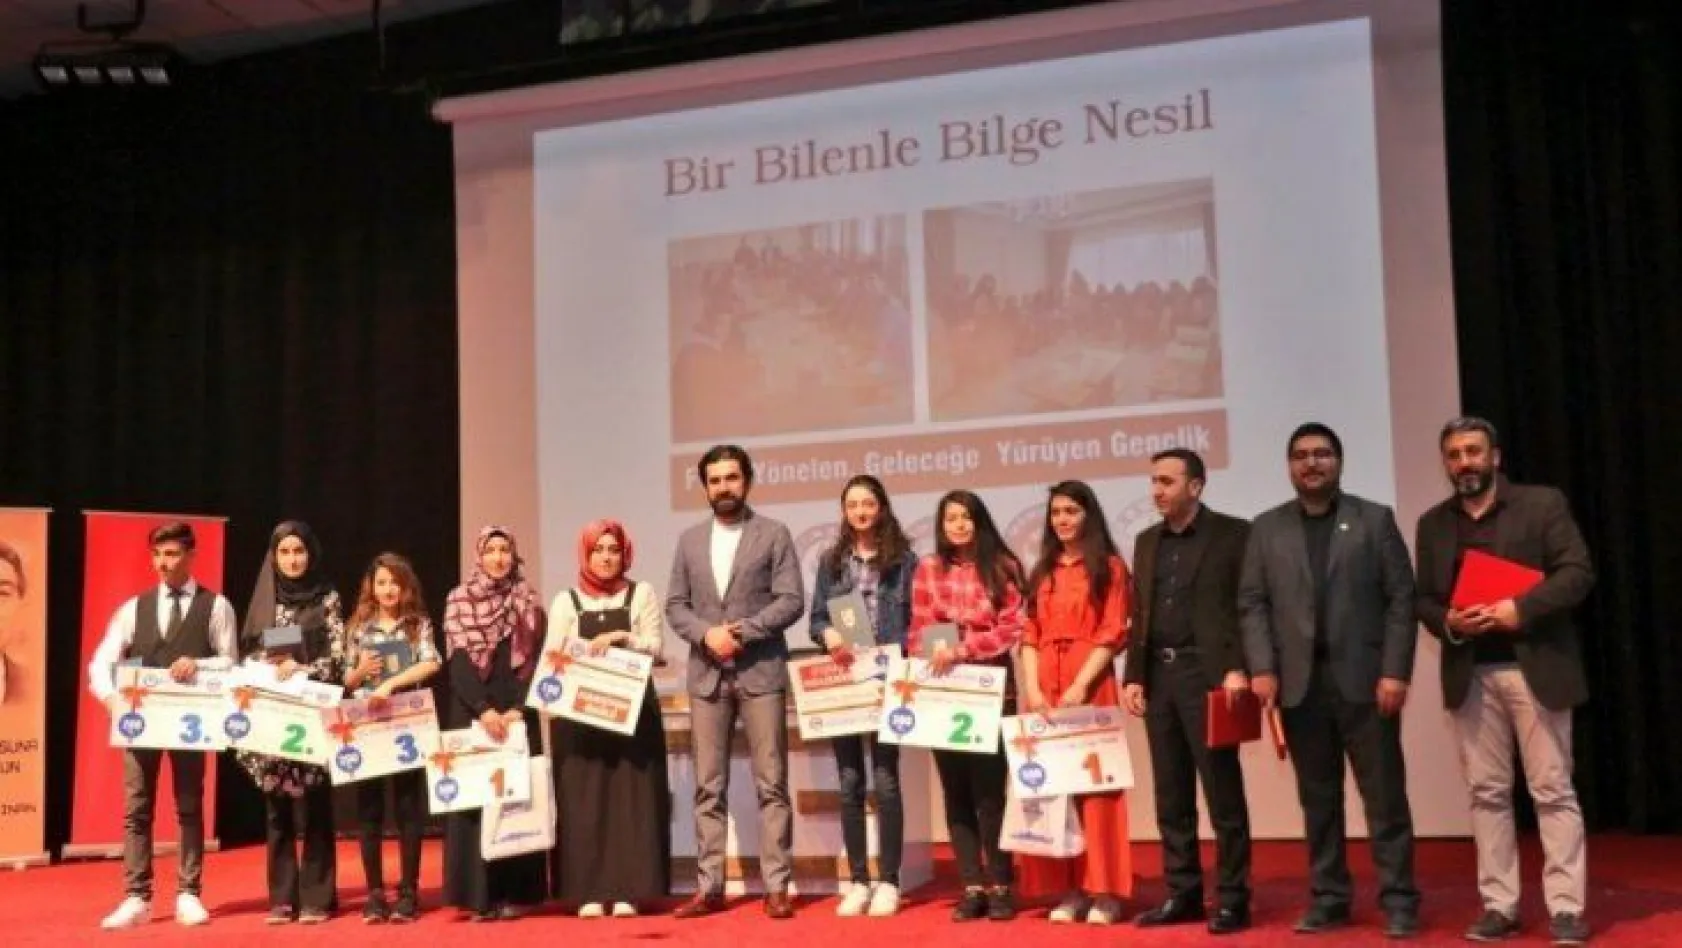 Elazığ'da 'Bir Bilenle Bilge Nesil' projesi